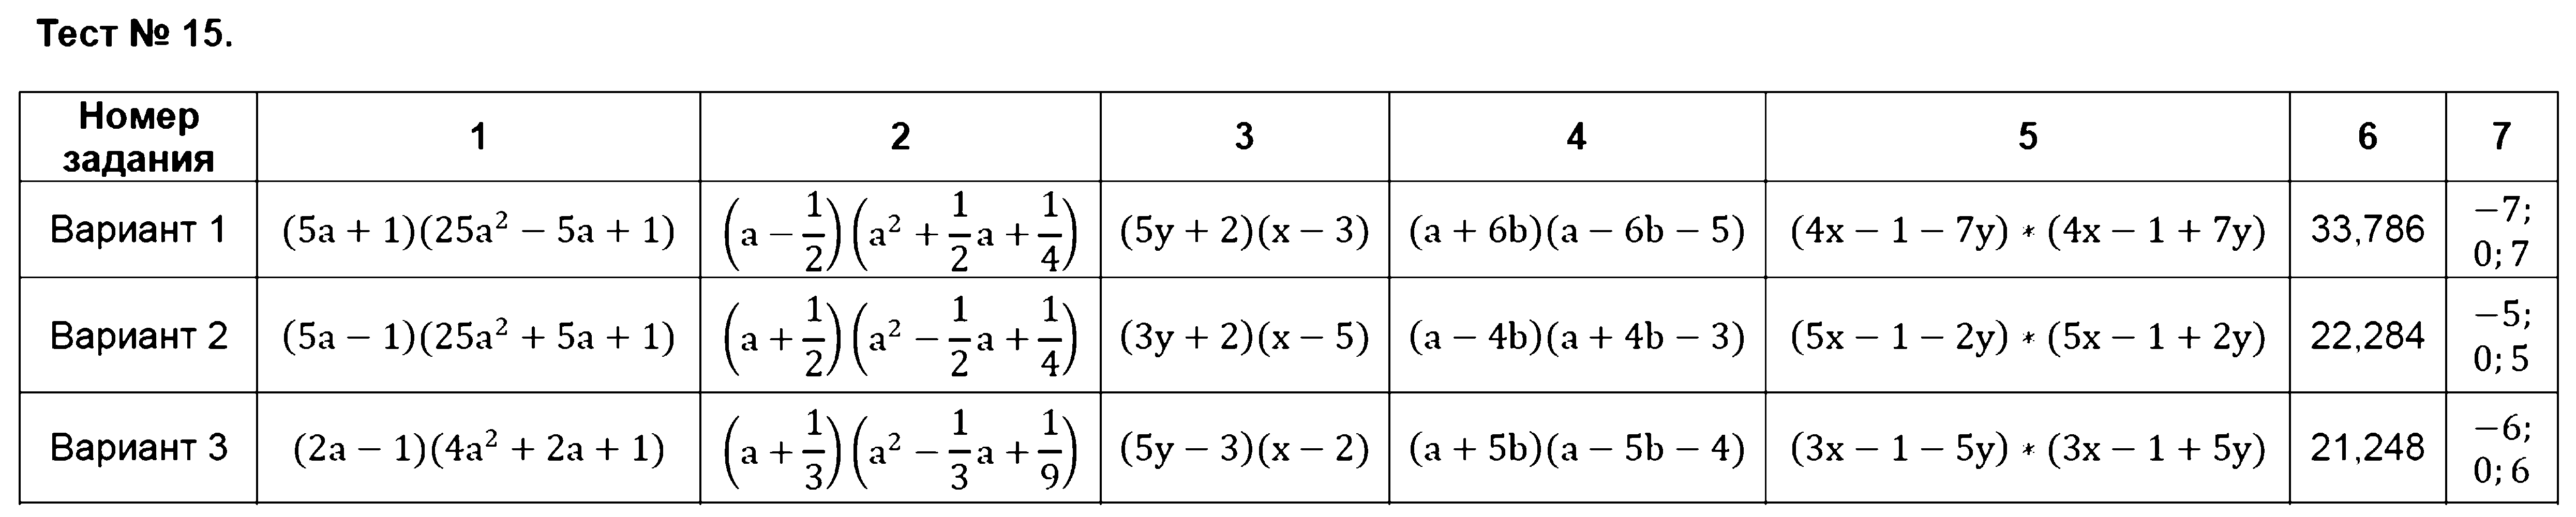 ГДЗ Алгебра 7 класс - Тест 15